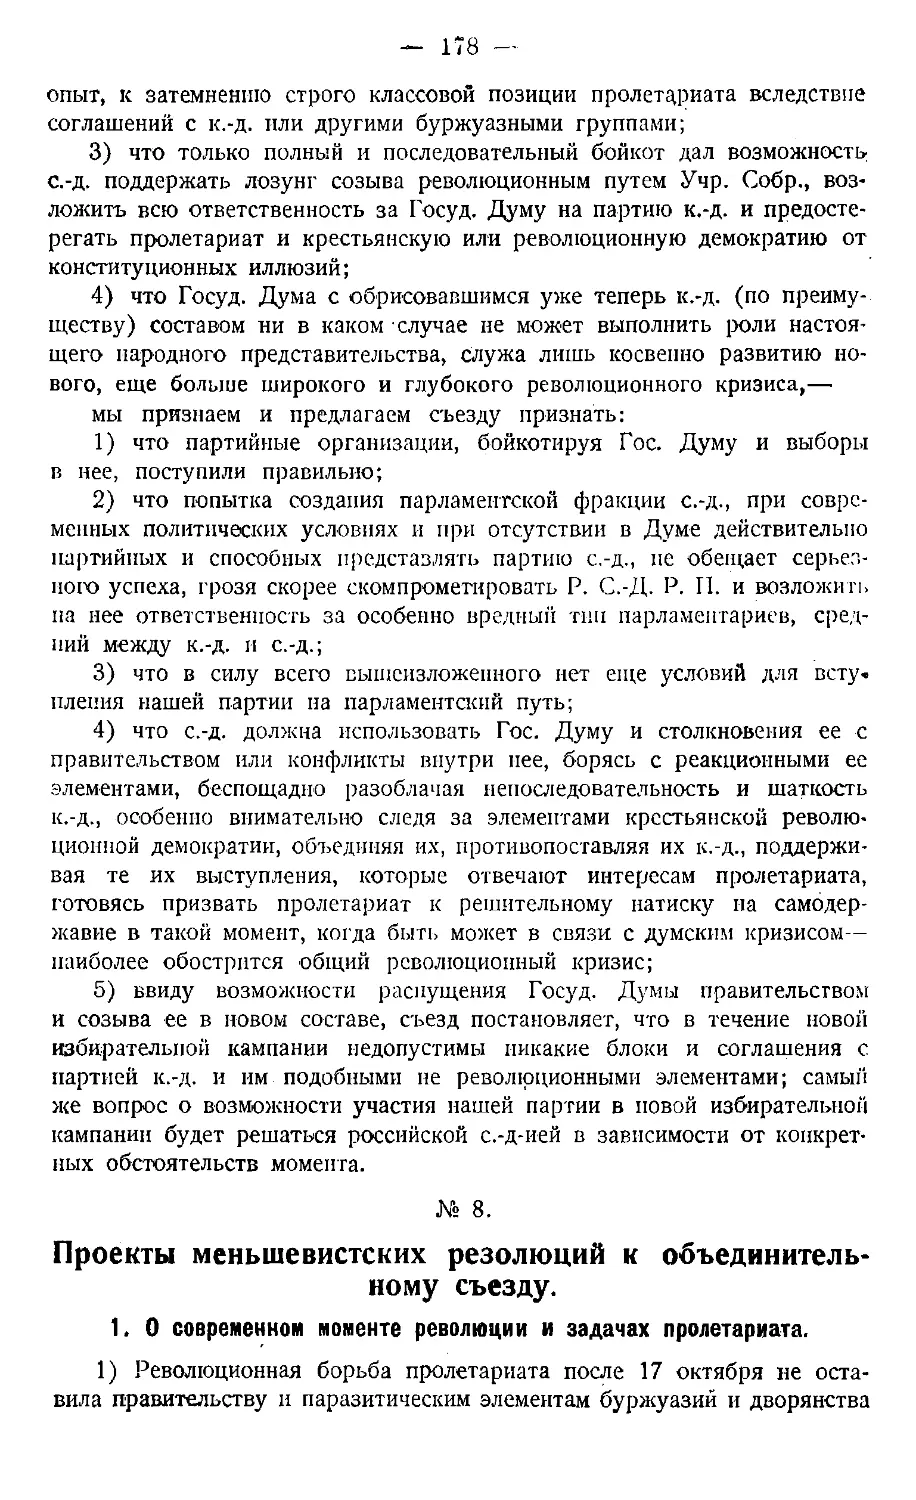 № 8. Проекты меньшевистских резолюций к объединительному съезду.